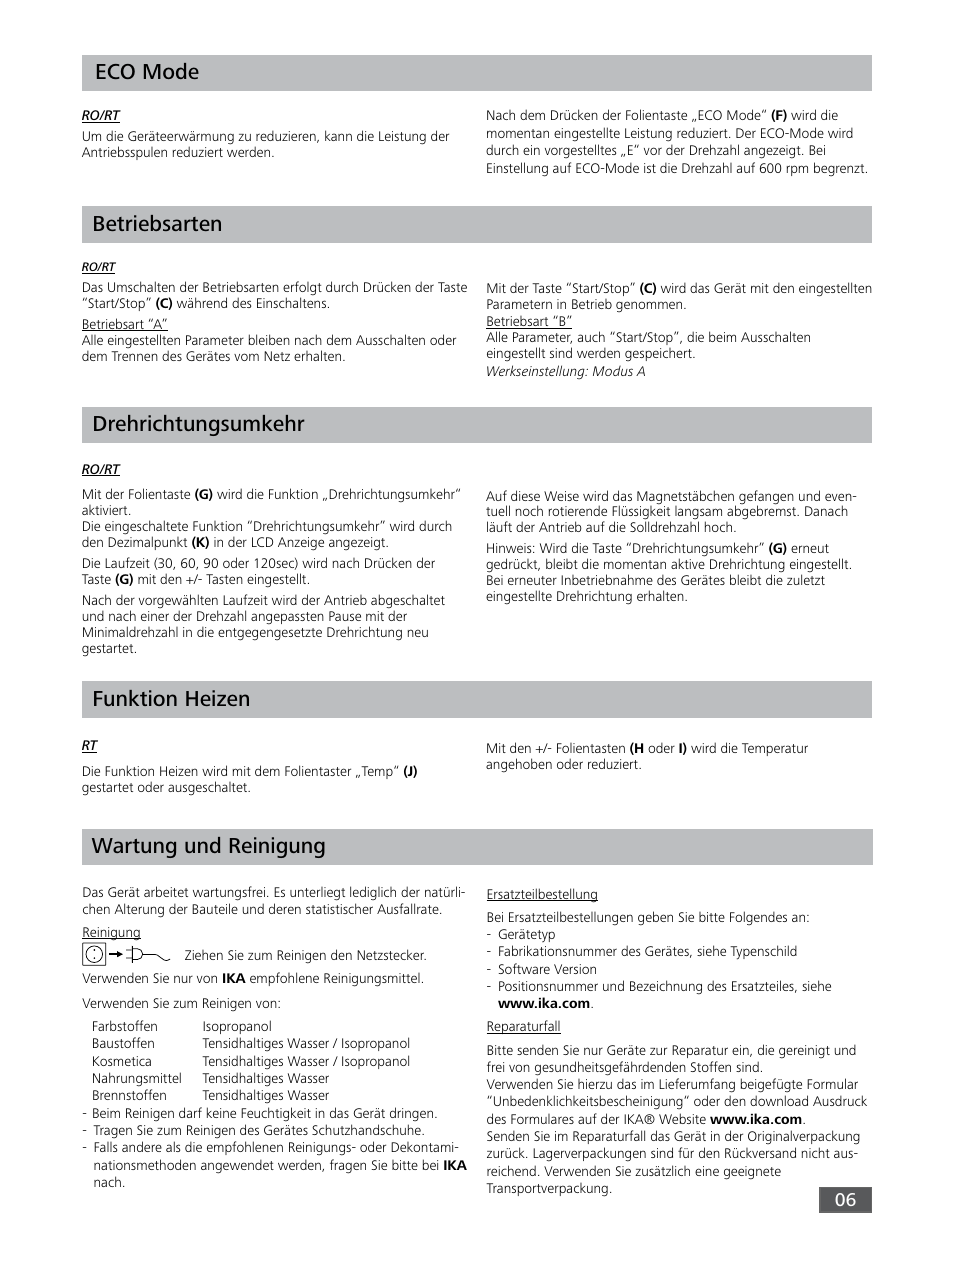 Funktion heizen eco mode, Drehrichtungsumkehr, Betriebsarten | Wartung und reinigung | IKA RO 15 User Manual | Page 6 / 40